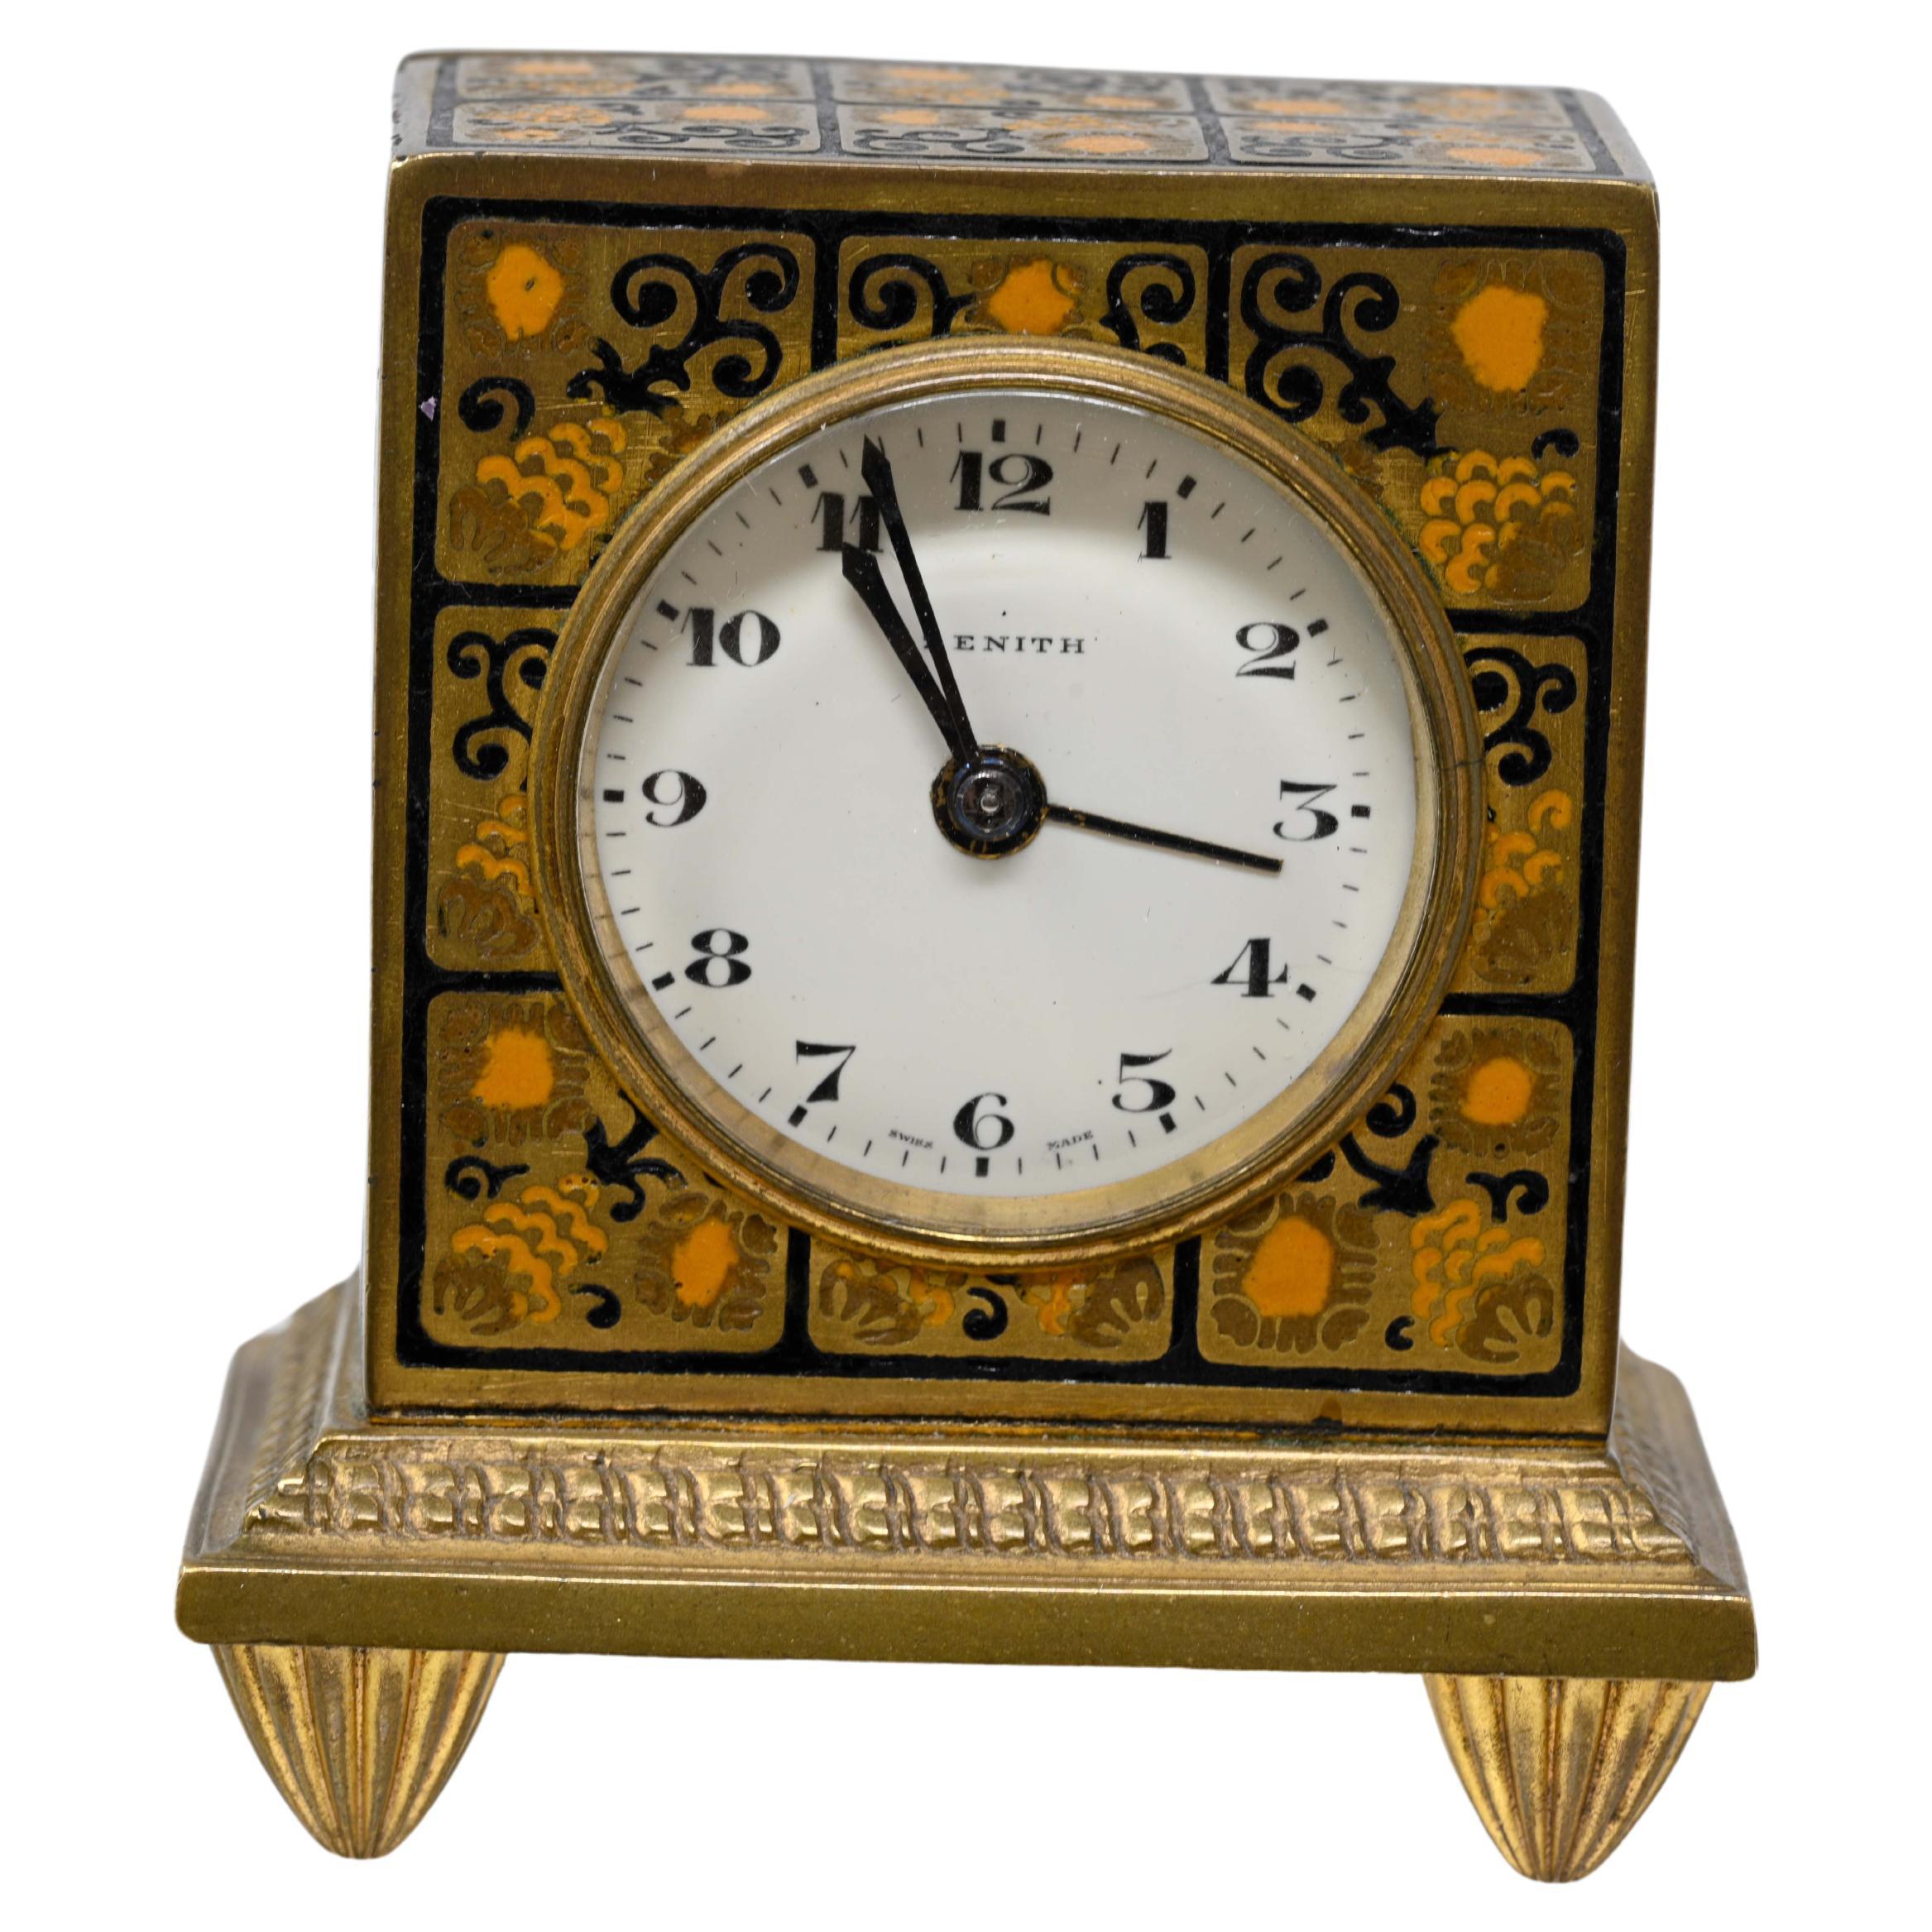 Zenith Alarm-Reiseuhr aus emaillierter Bronze, Dore Traveller-Uhr